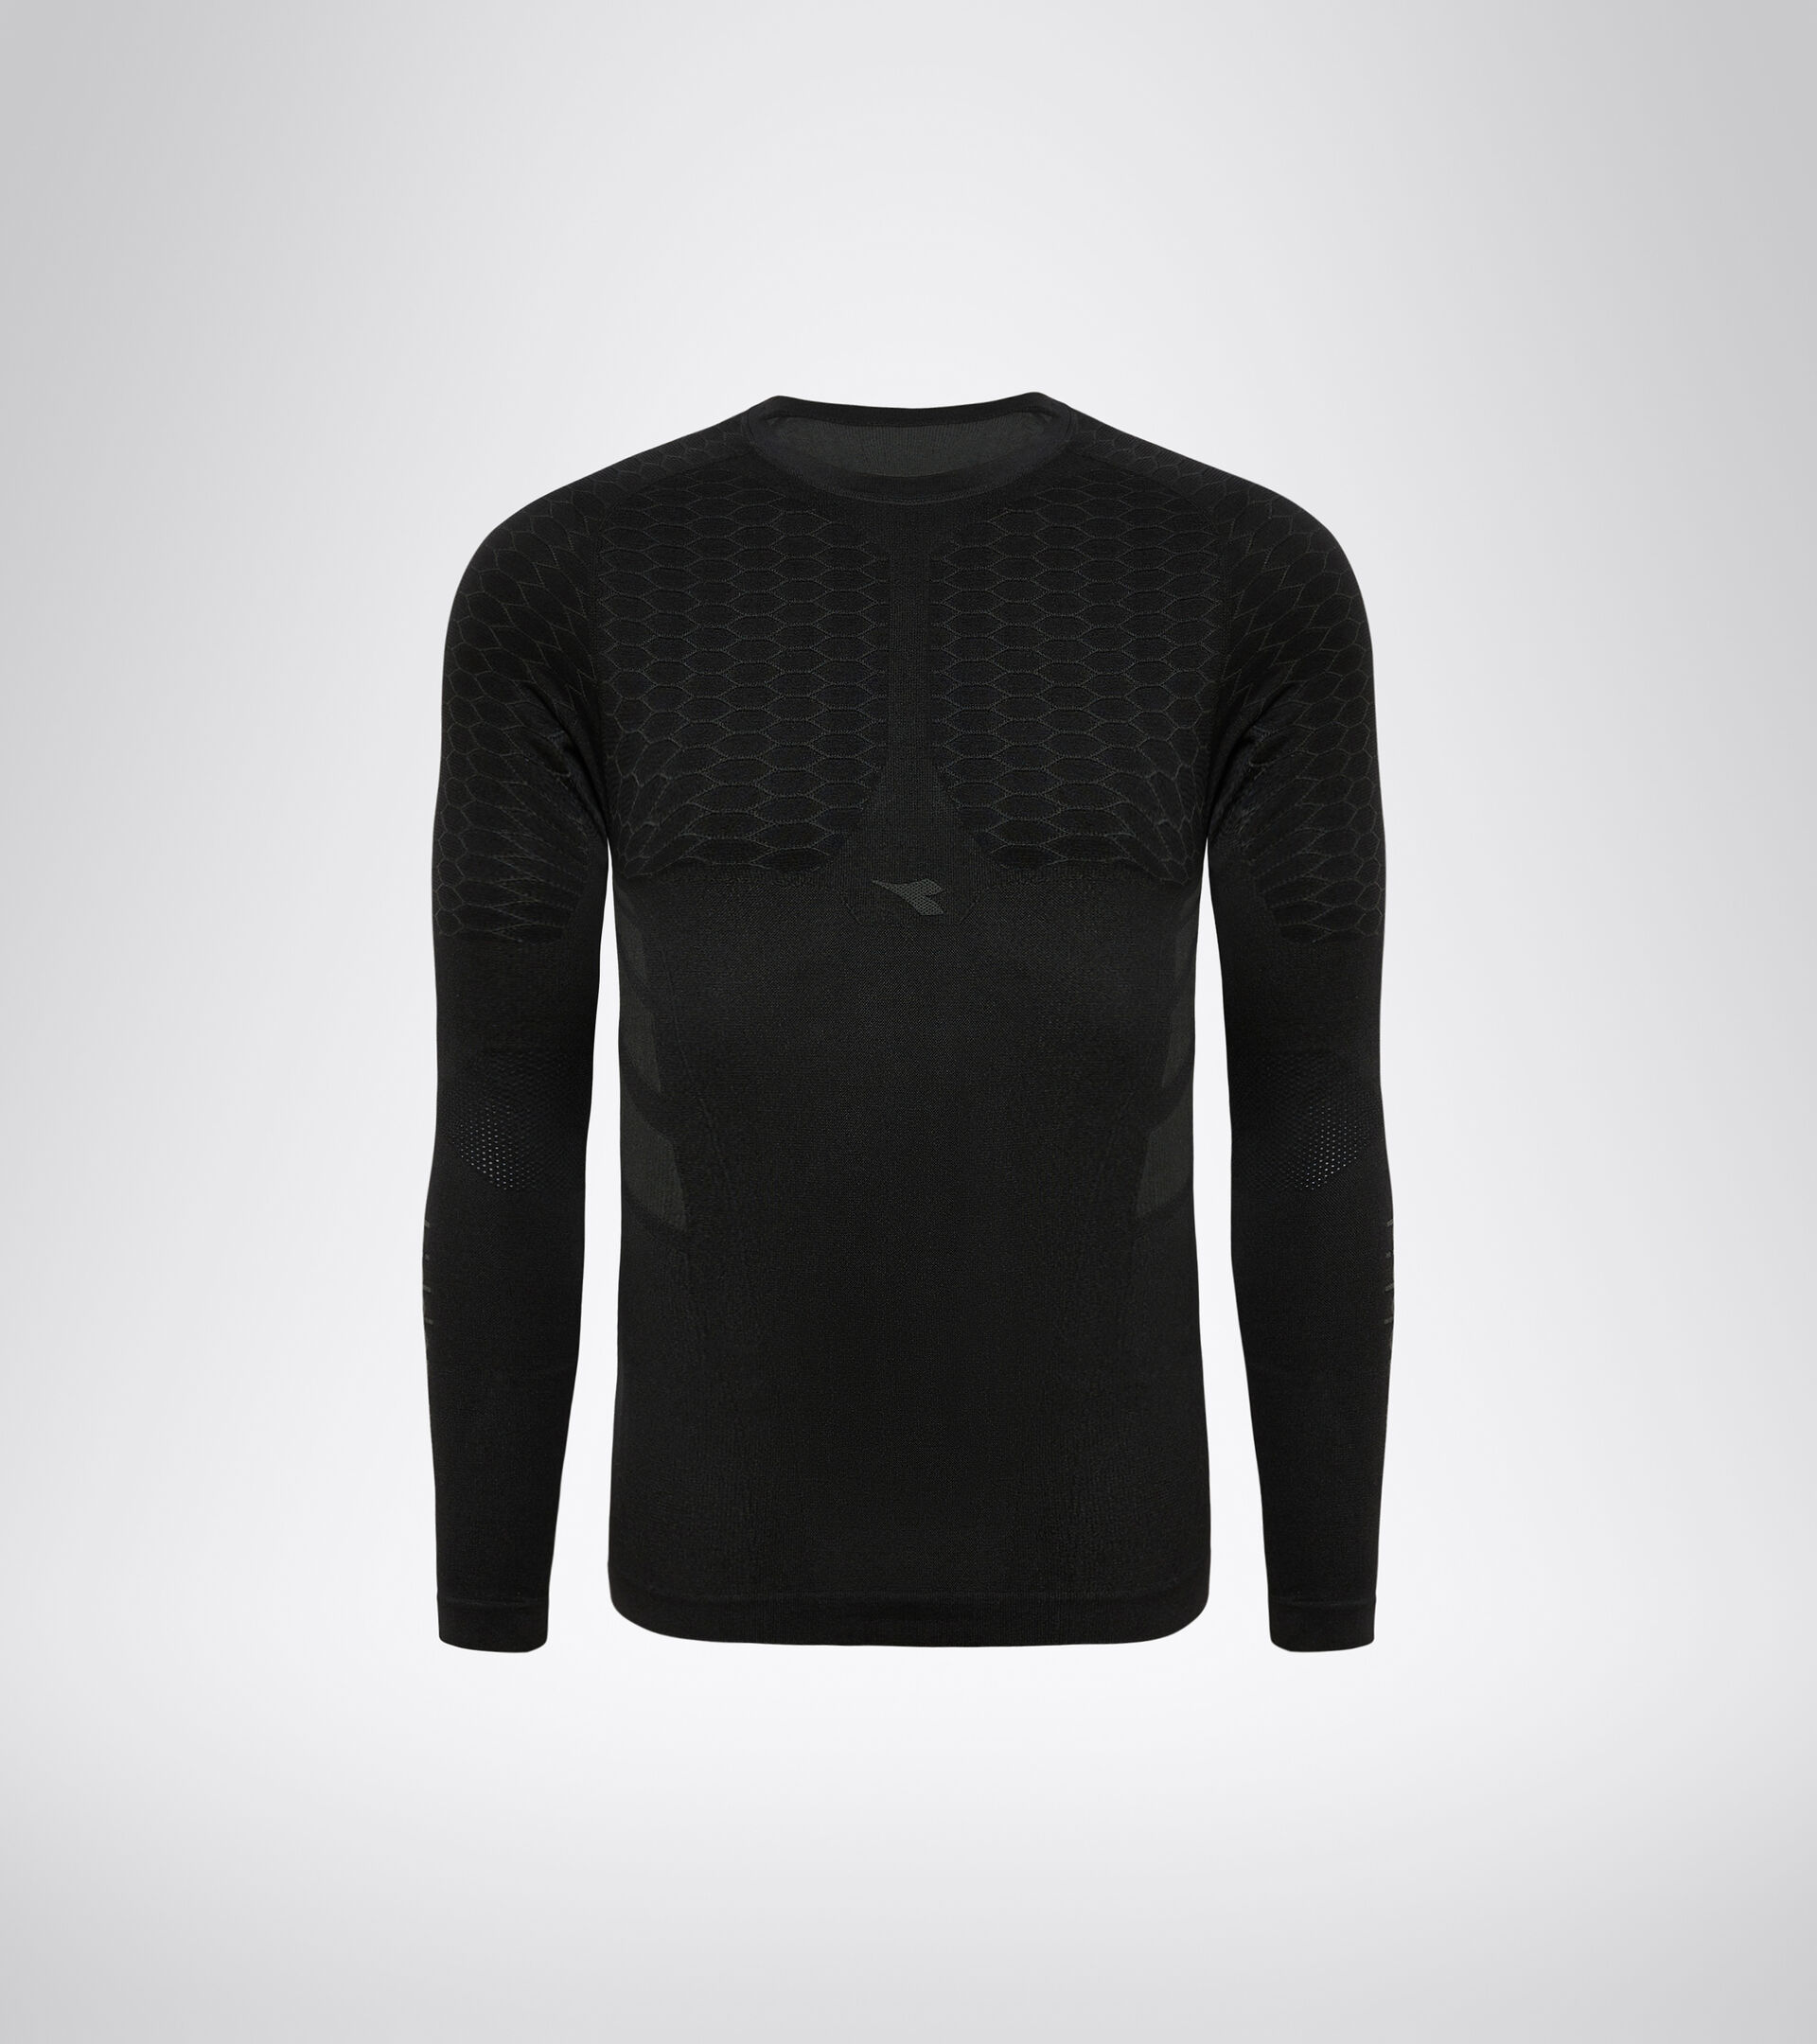 LS T-SHIRT ACT Long-sleeved training t-shirt - Men - Diadora Online Store